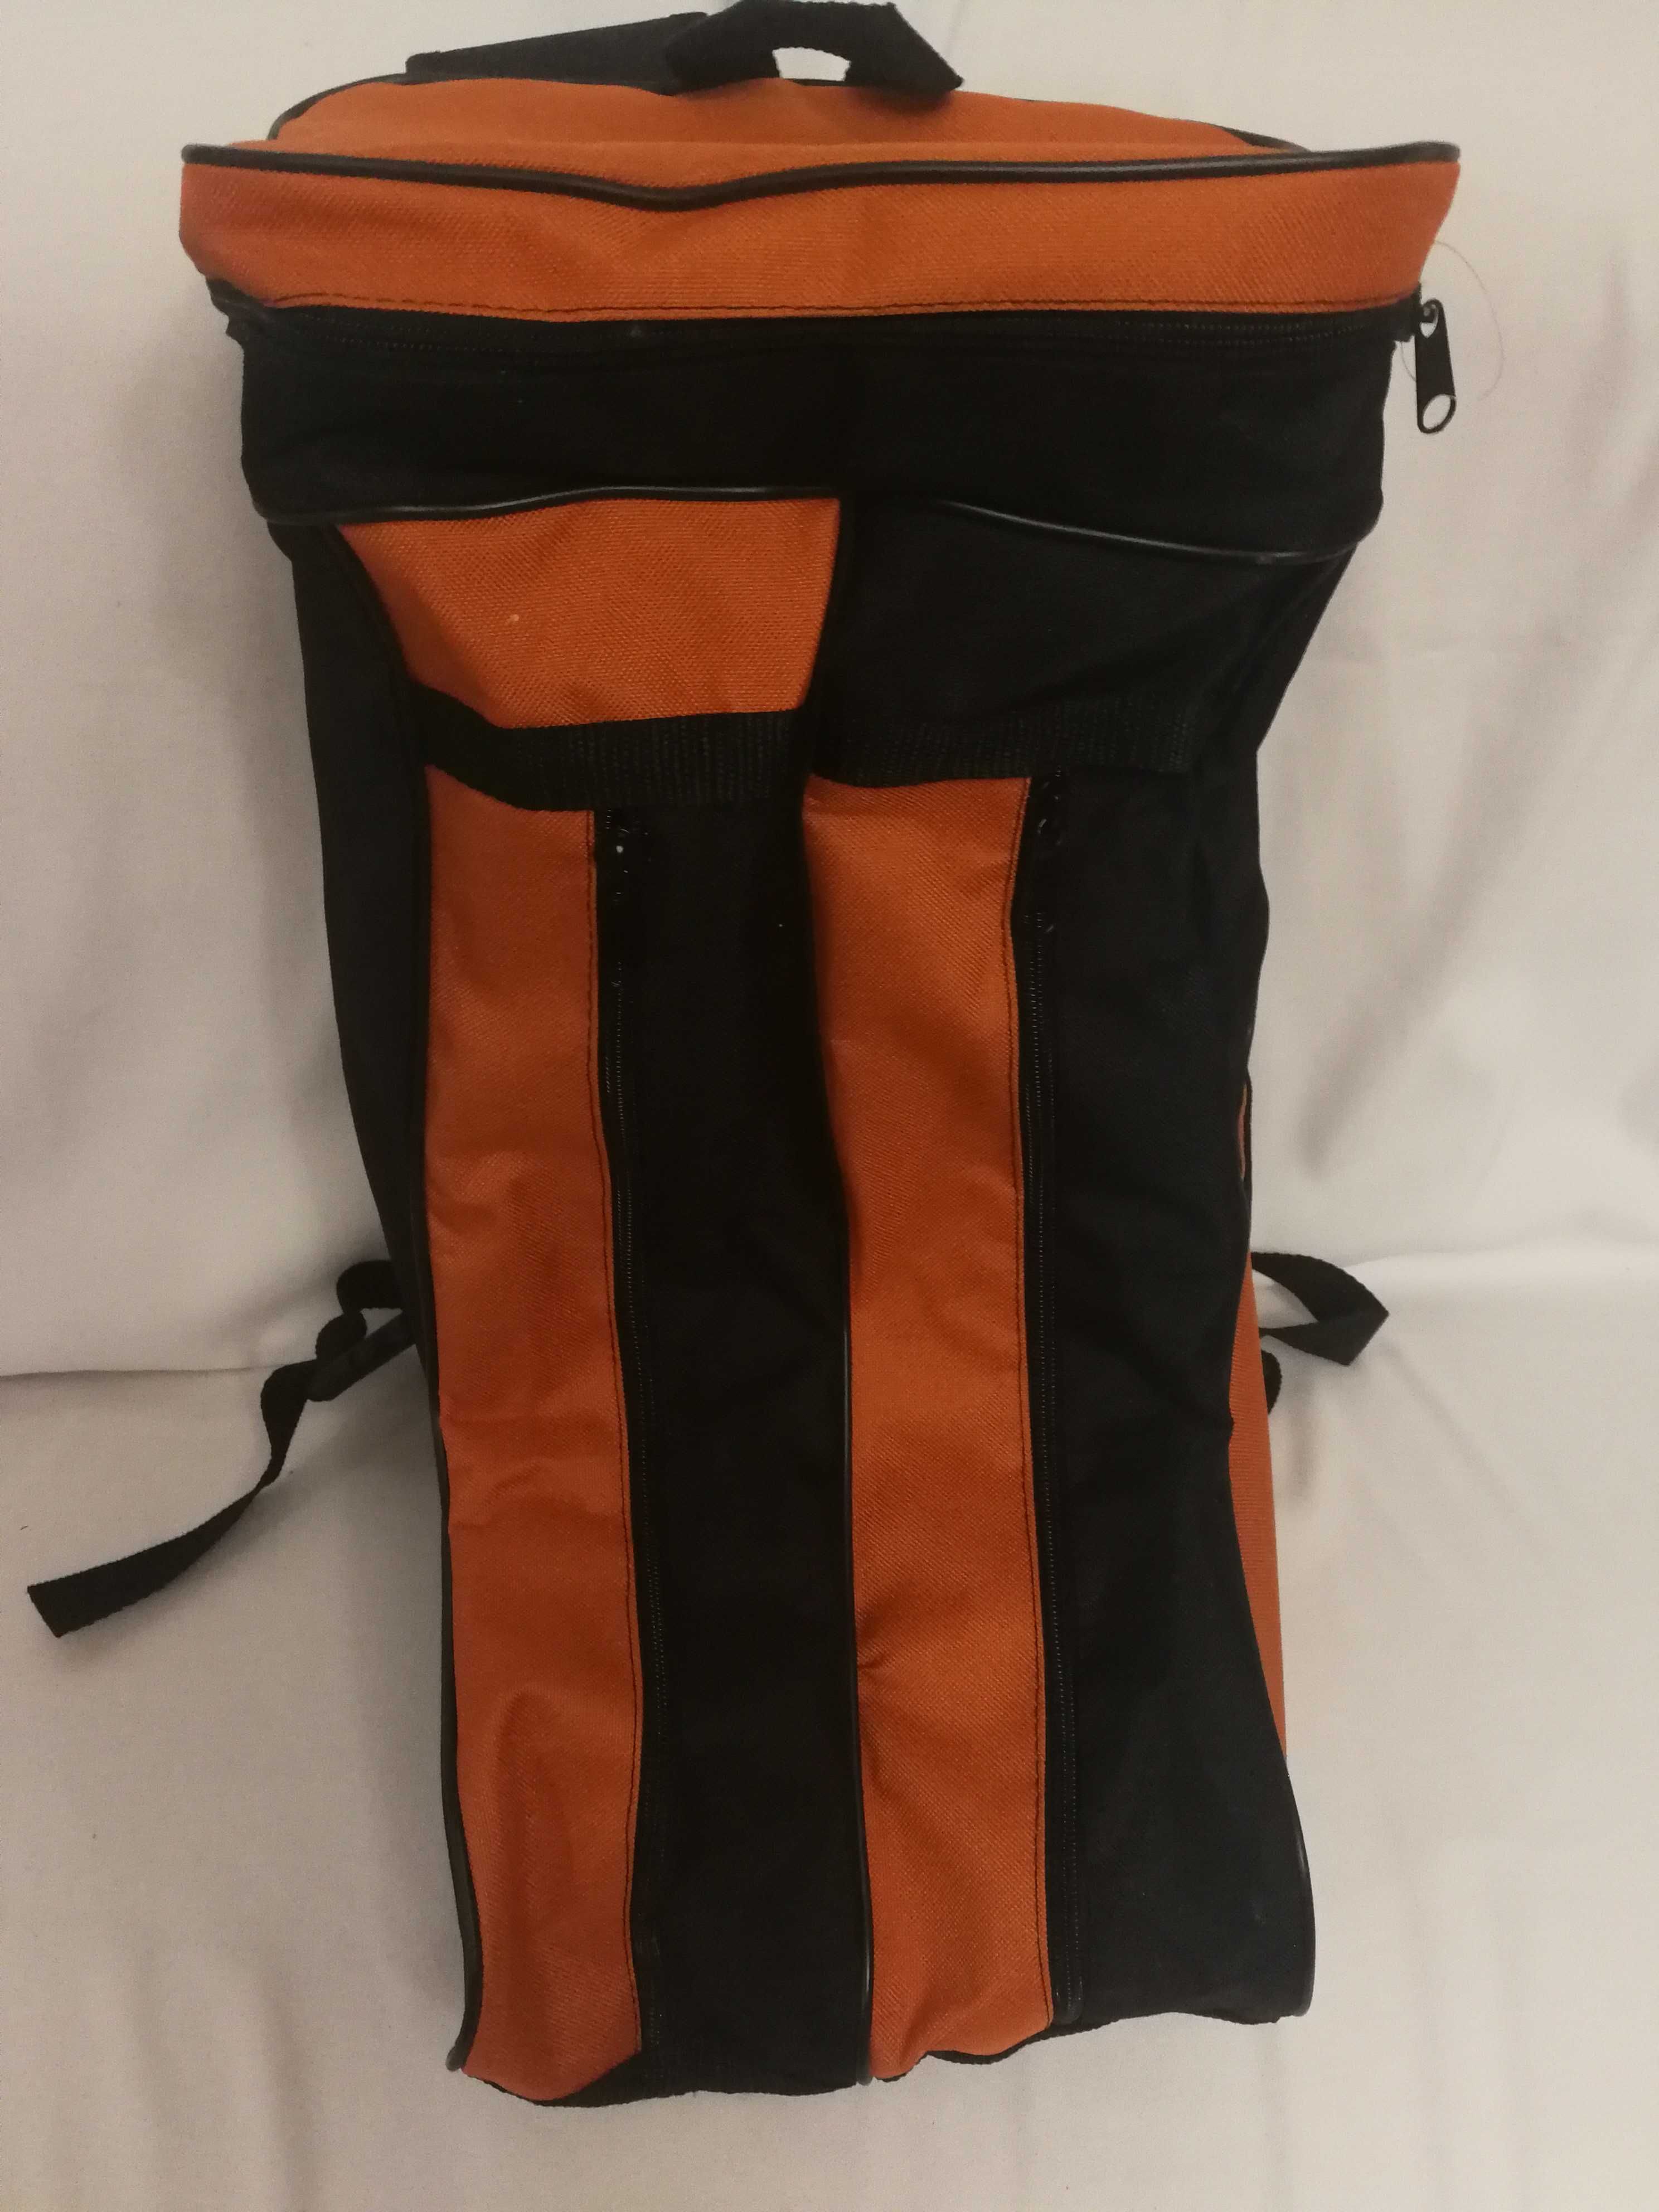 Plecak dwukomorowy na buty narciarskie, czarno - pomarańczowy.